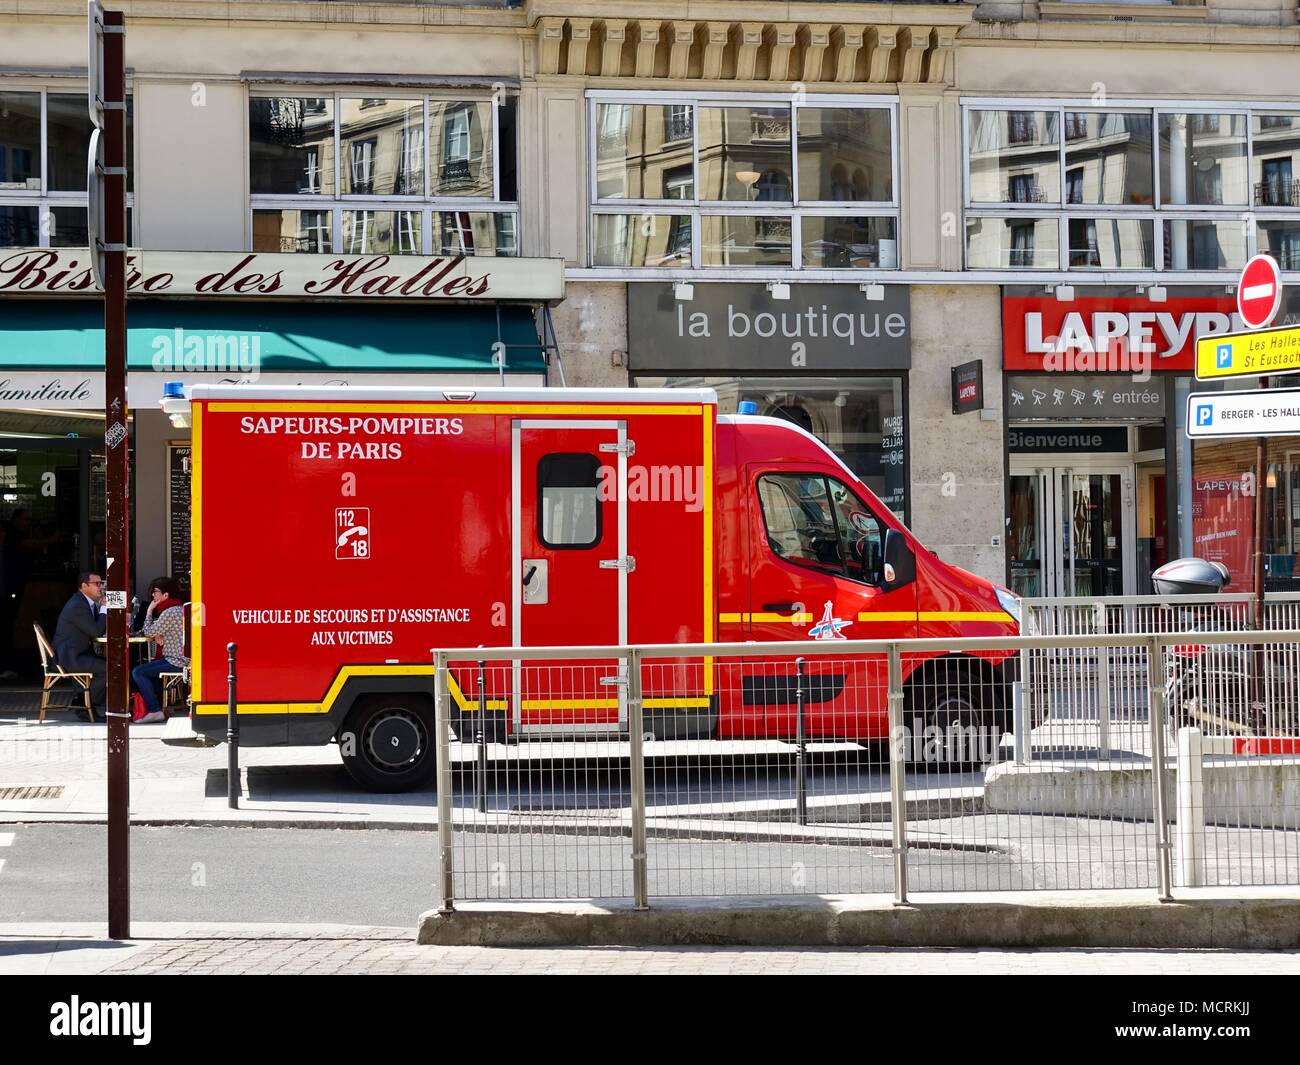 Sapeurs-pompiers de Paris ambulance, part of the French emergency service,  parked outside shops near Les Halles. Paris, France Stock Photo - Alamy